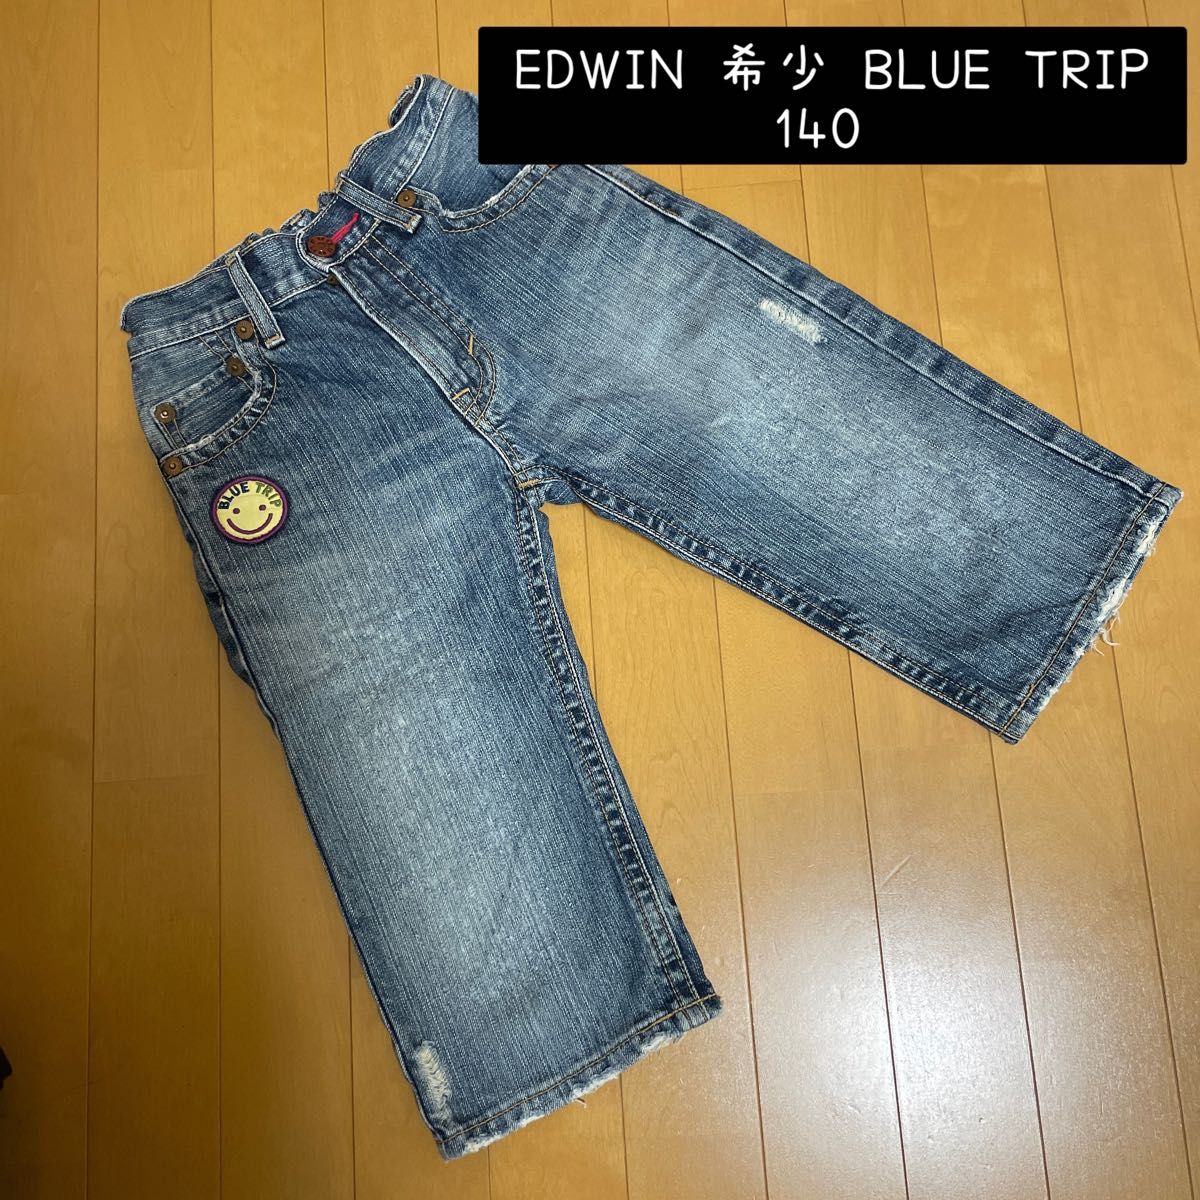 EDWIN 希少 BLUE TRIP デニム 男の子 140  